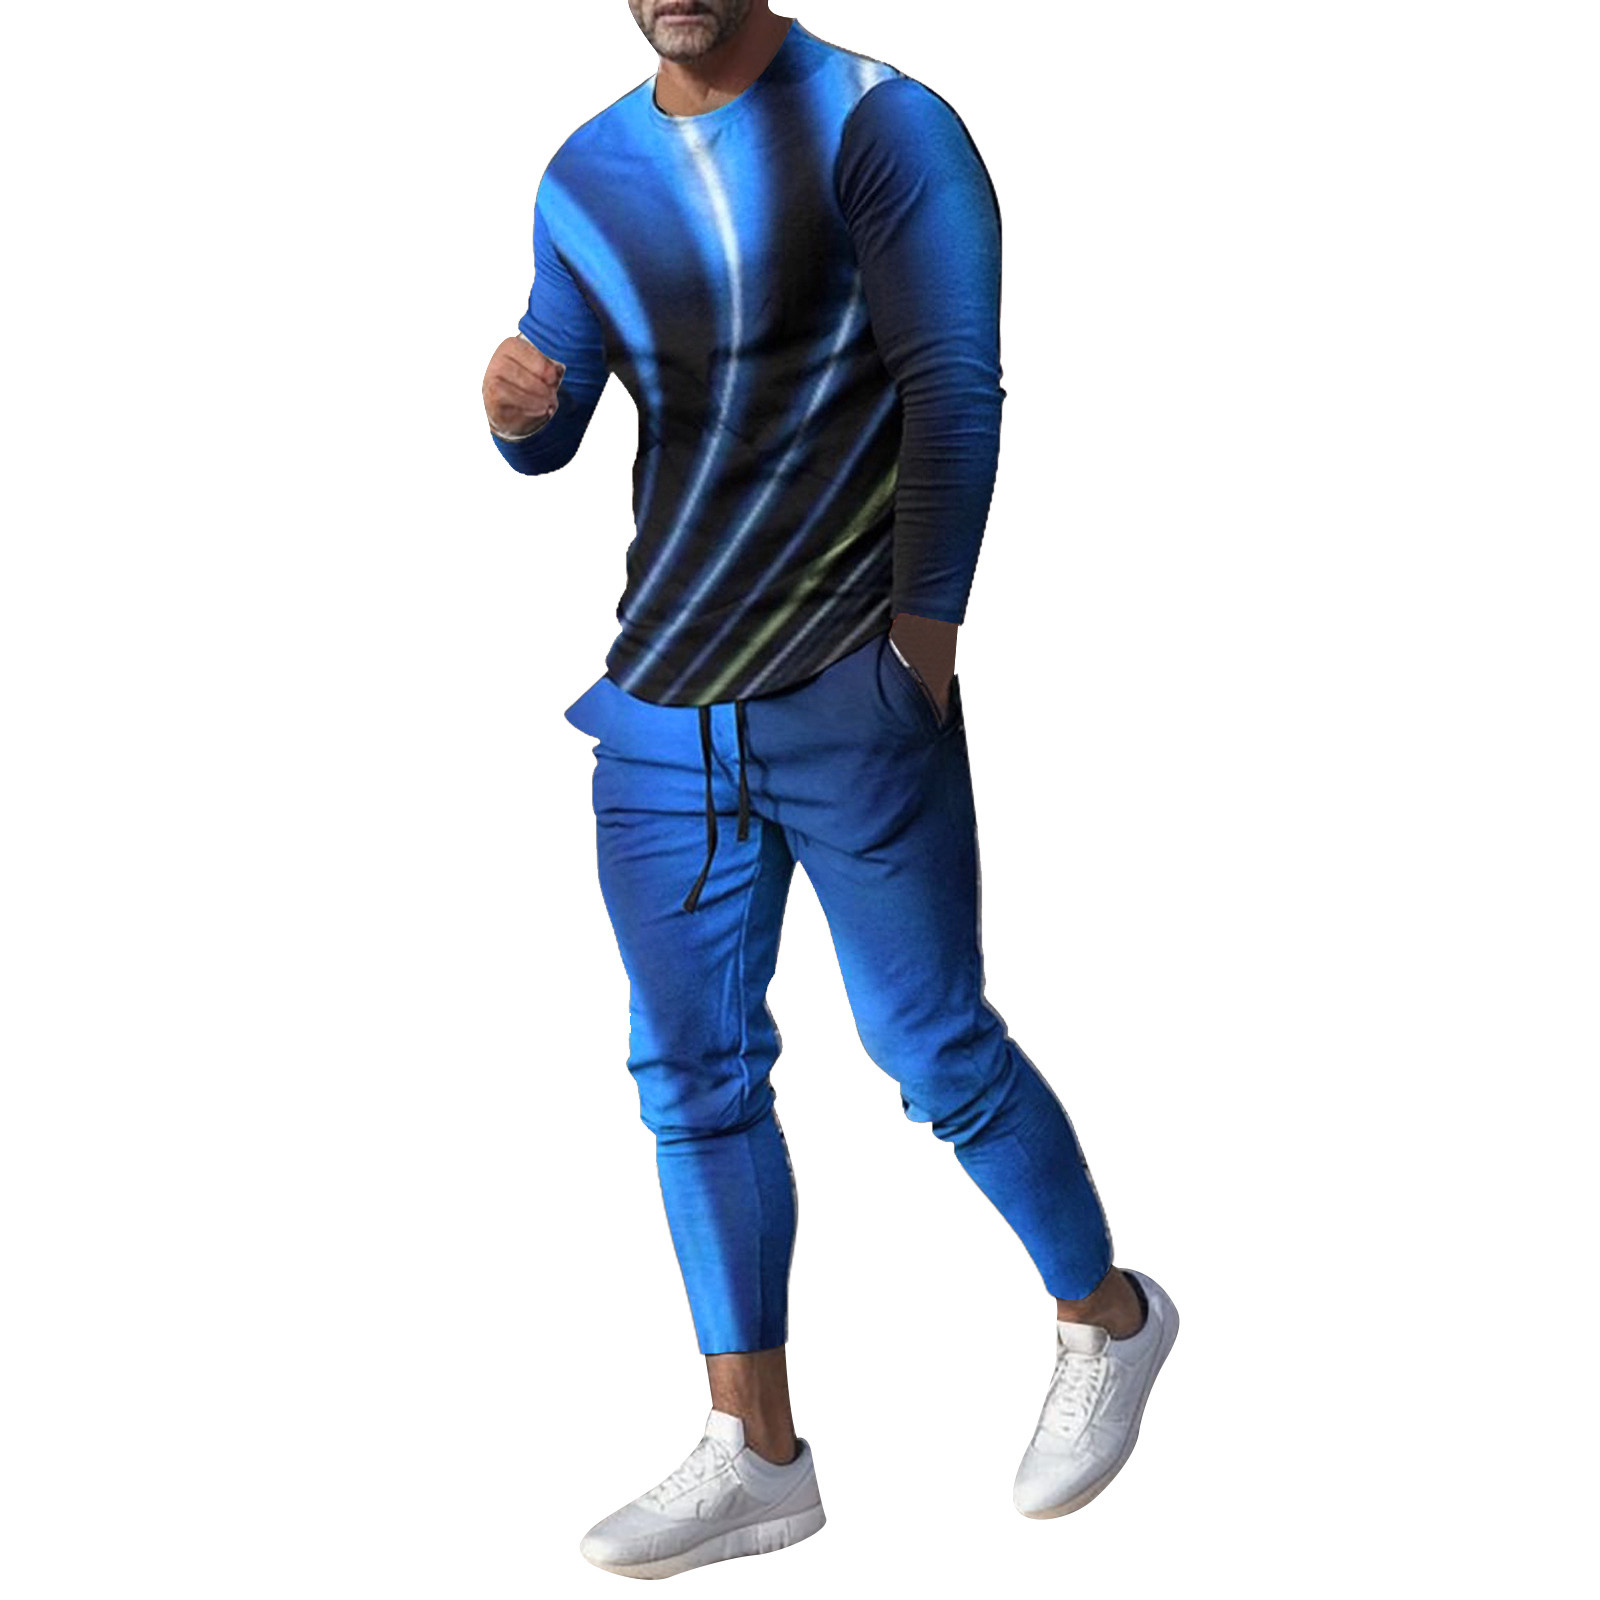 8QIDA Men's Tracksuit 2 Piece Sweatsuit Set Long Sleeve Suit for Casual ...